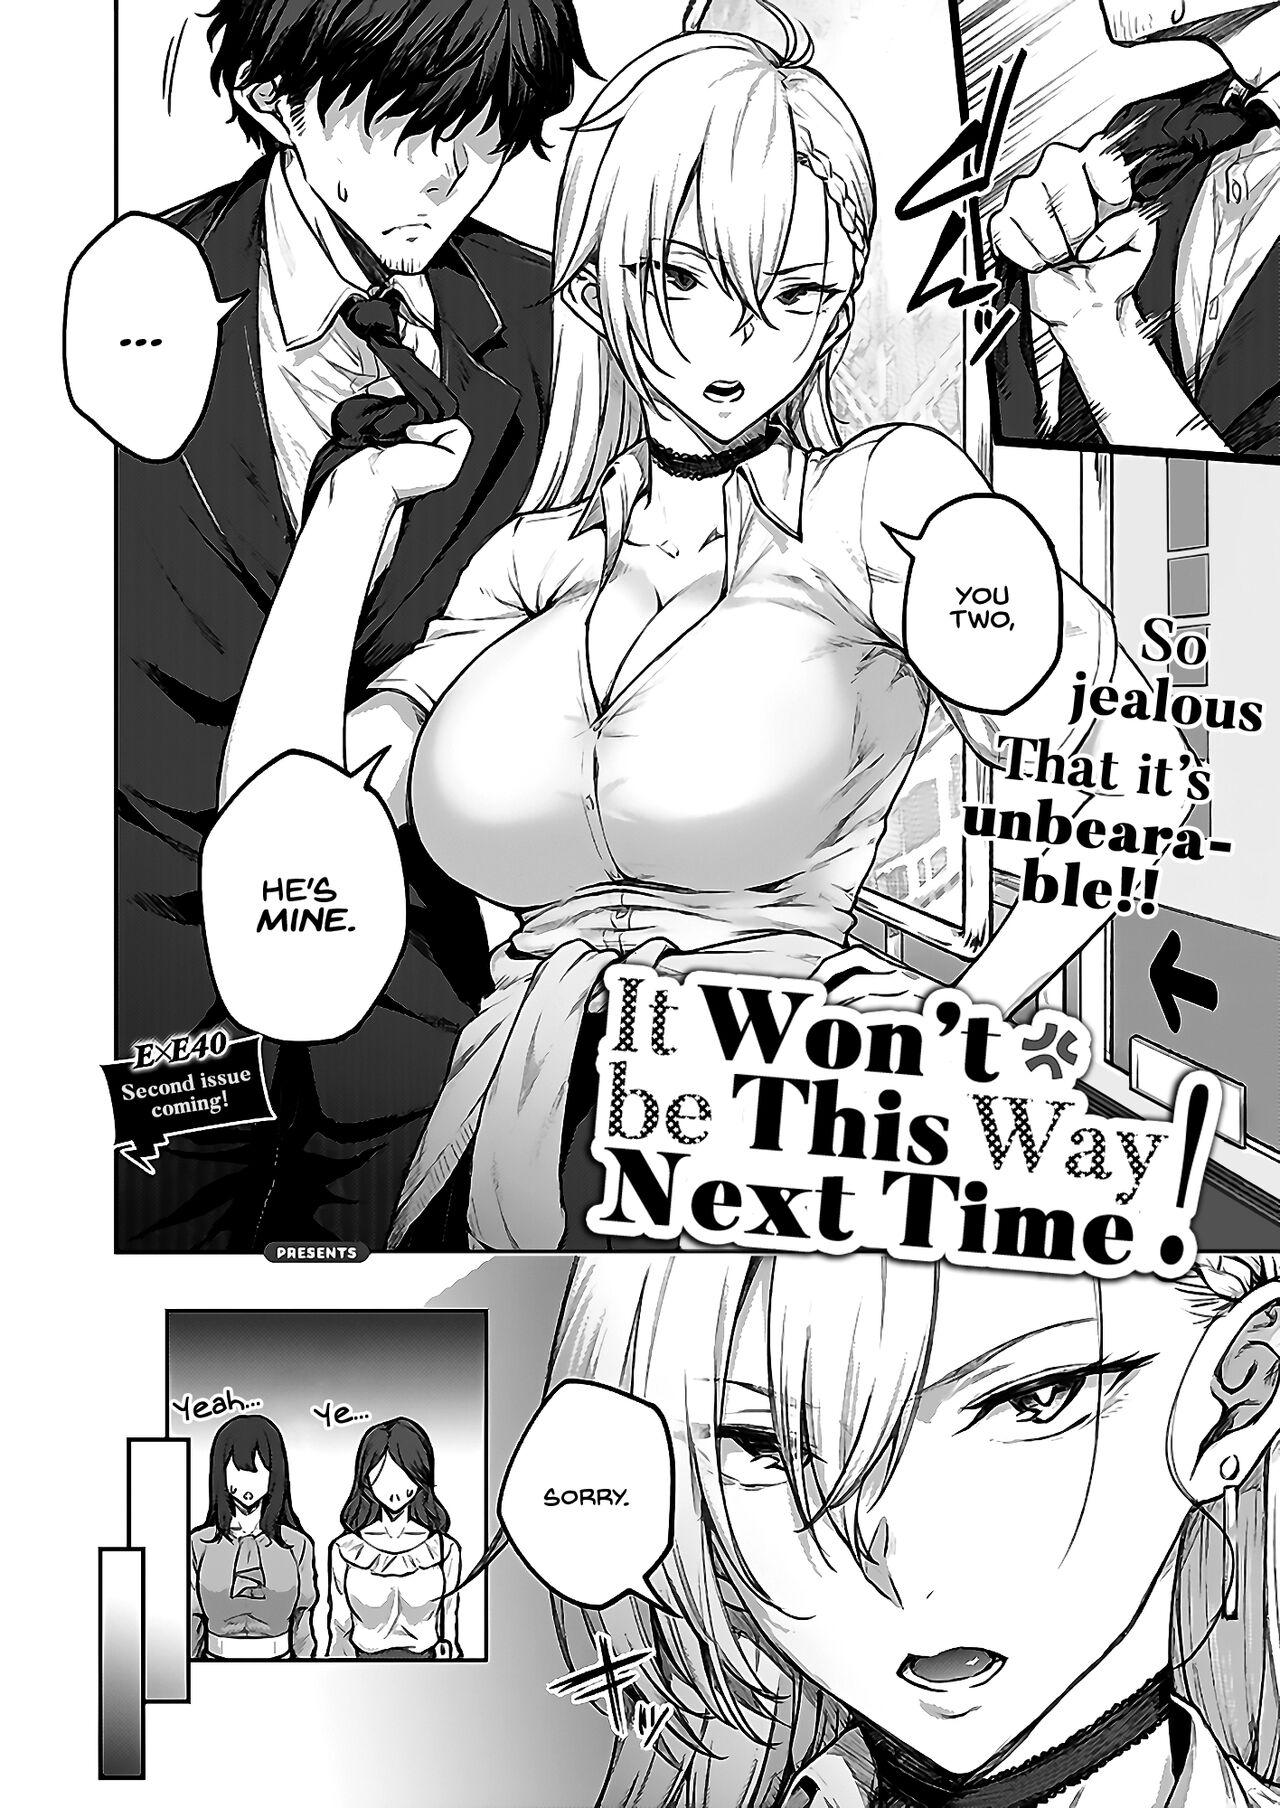 Fingers Tsugi wa Kou wa Ikanai kara na! | It won't be this way next time! Pornstar - Page 2